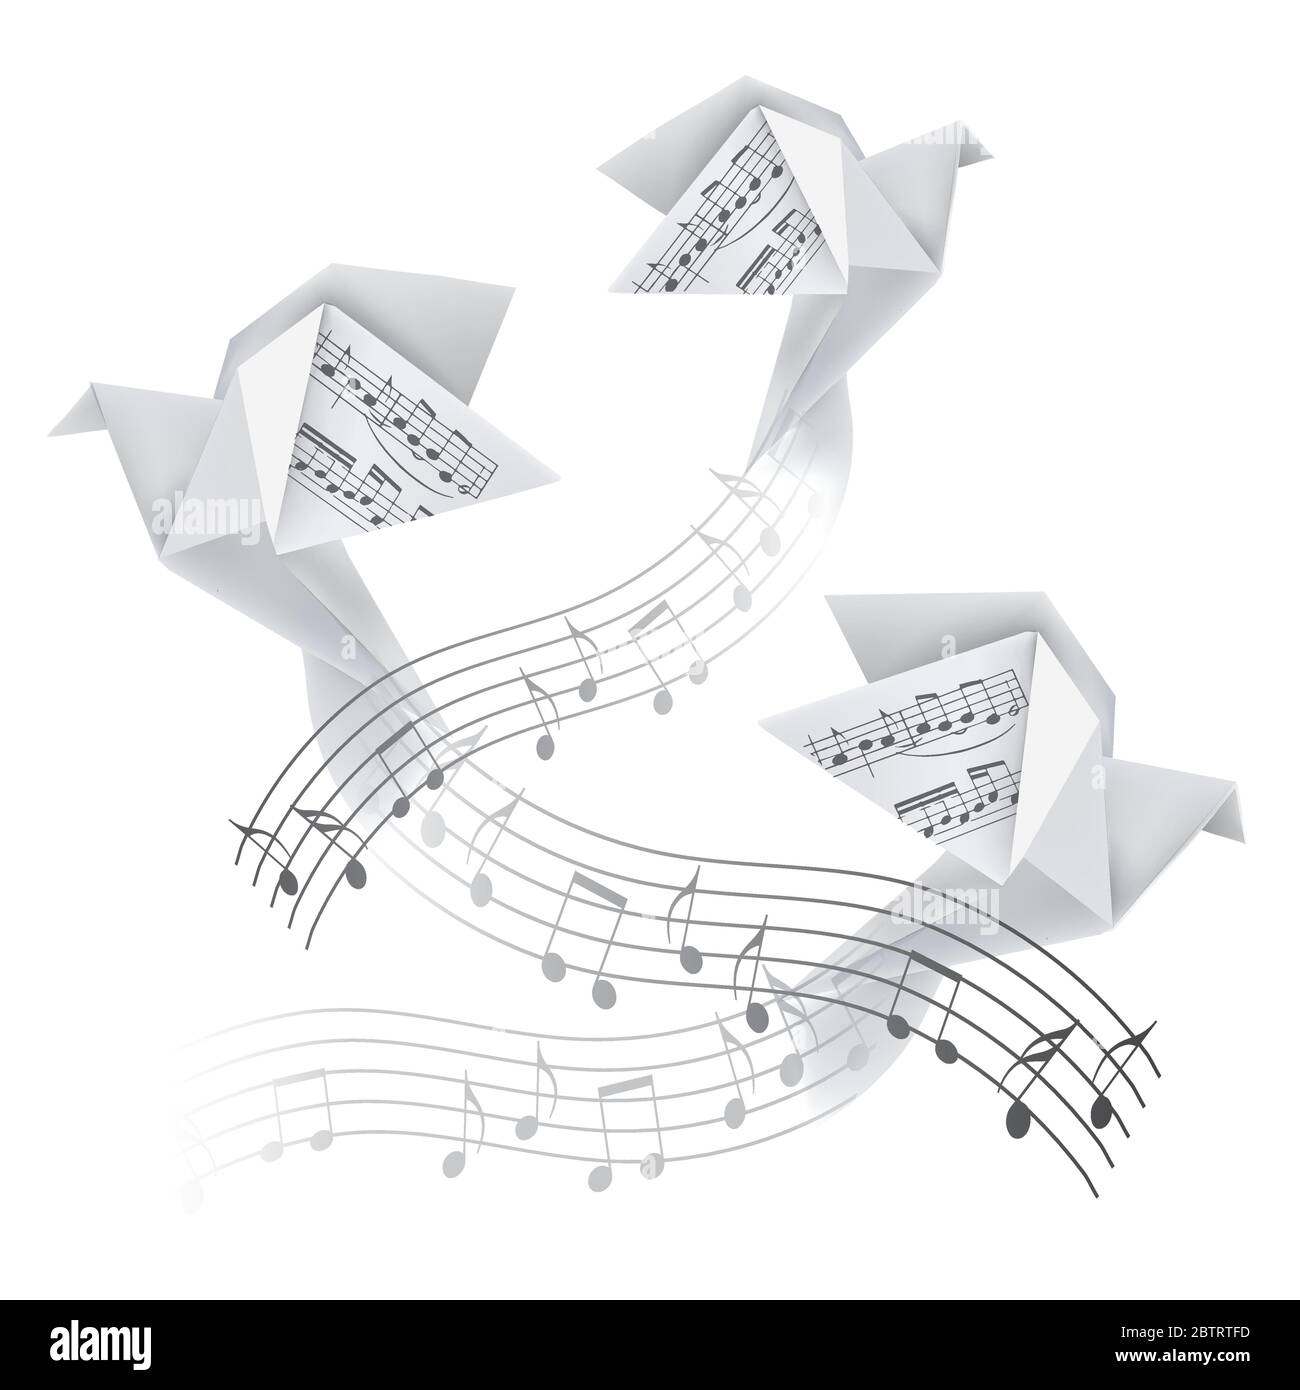 Drei Origami-Tauben mit musikalischen Noten. Stilisierte Illustration von Papiertauben auf Welle mit musikalischen Noten. Poetisches musikalisches Motiv. Vektor verfügbar. Stock Vektor